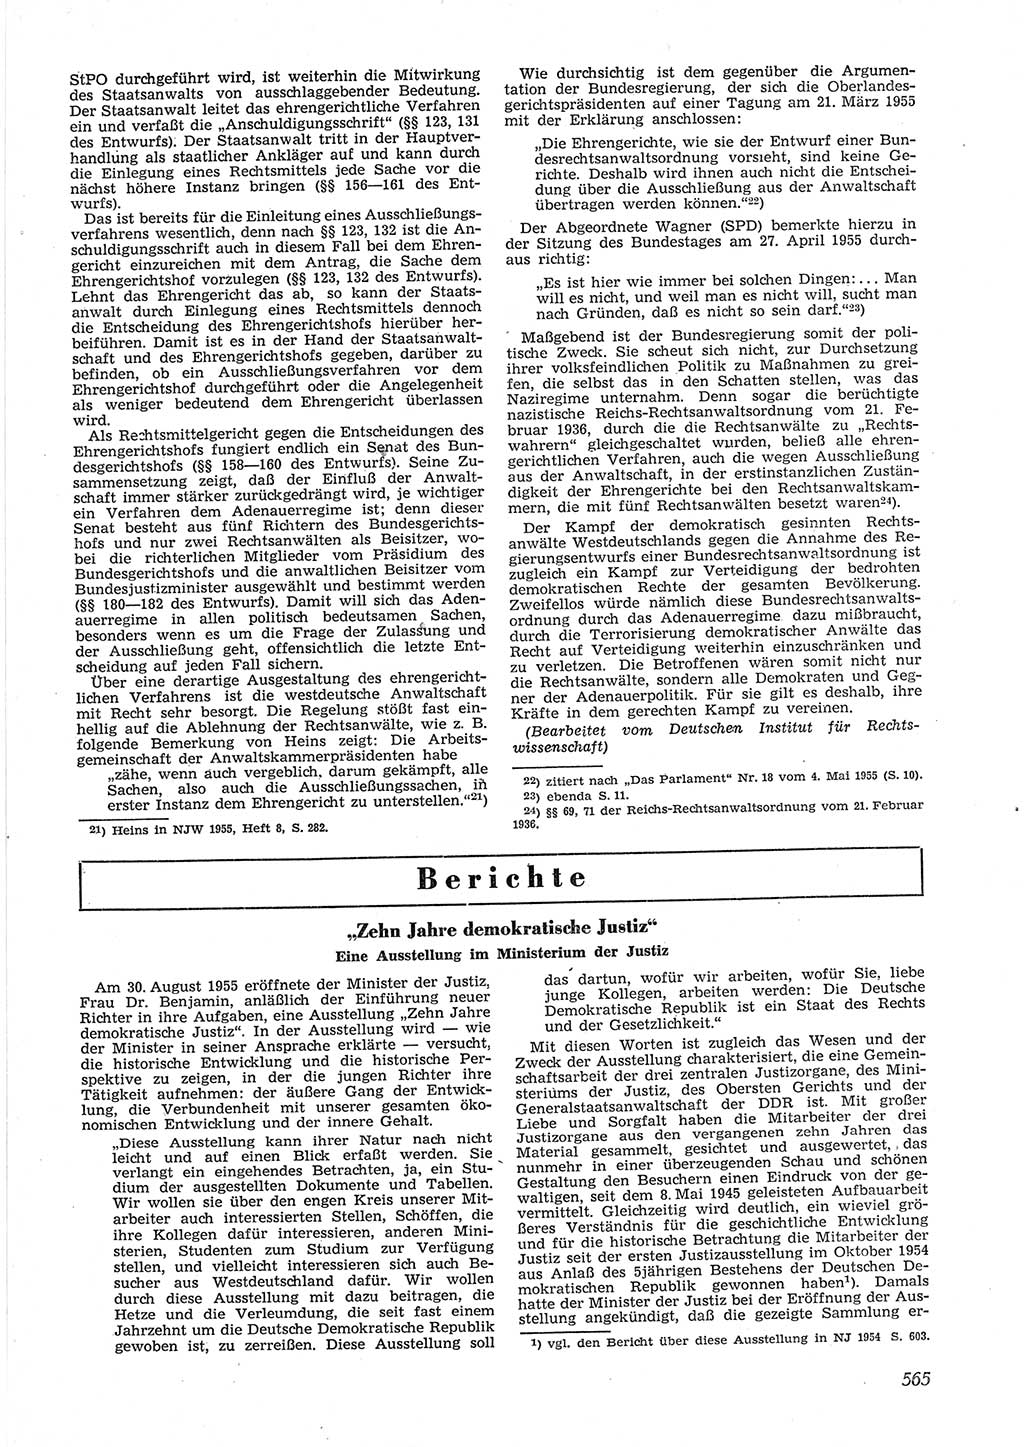 Neue Justiz (NJ), Zeitschrift für Recht und Rechtswissenschaft [Deutsche Demokratische Republik (DDR)], 9. Jahrgang 1955, Seite 565 (NJ DDR 1955, S. 565)